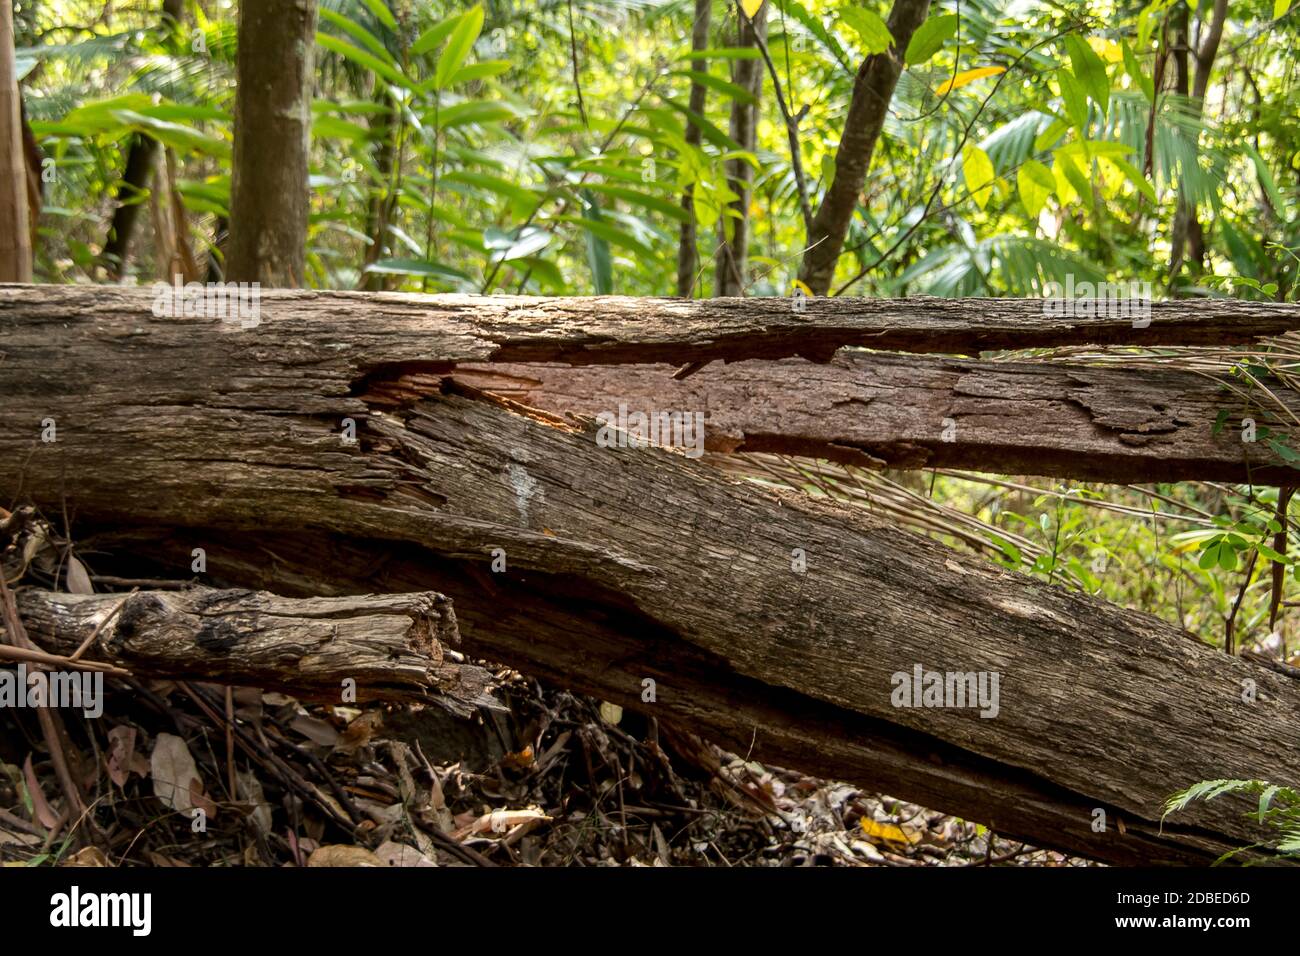 Forêt tropicale des basses terres sur Tamborine Mountain, Queensland, Australie. Arbre de gomme tombé (eucalyptus) avec tronc horizontal et divisé en deux. Banque D'Images